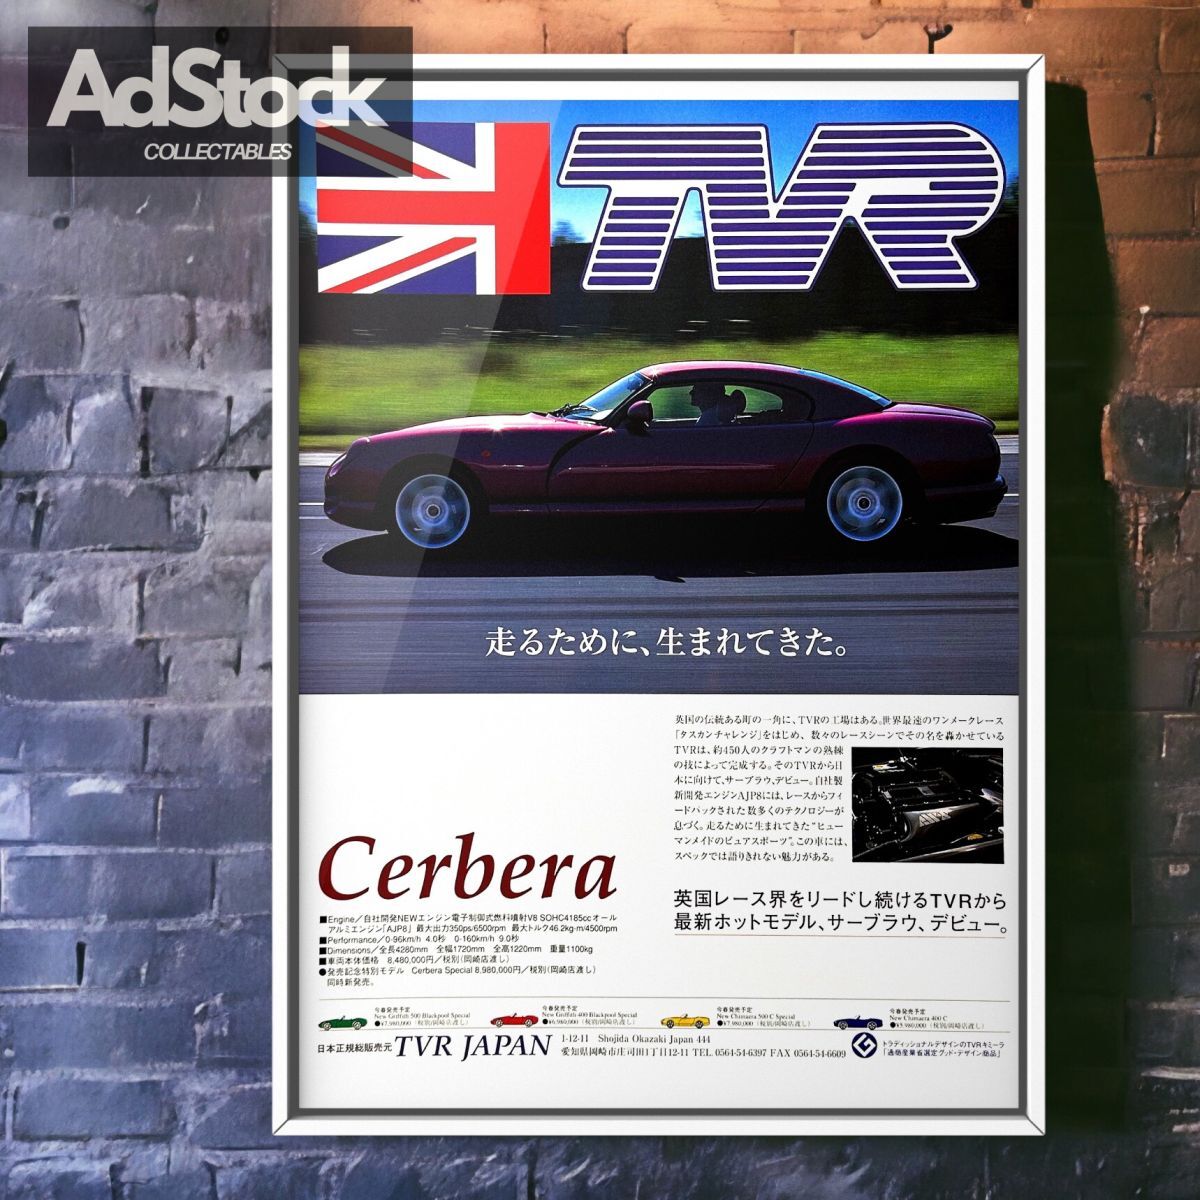 2000's 当時物!!! TVR 広告/ポスター Cerbera サーブラウ 4.2 4.5 Speed Six Mk1 1st gen AJP8 グランツーリスモ V8 スピード12_画像1